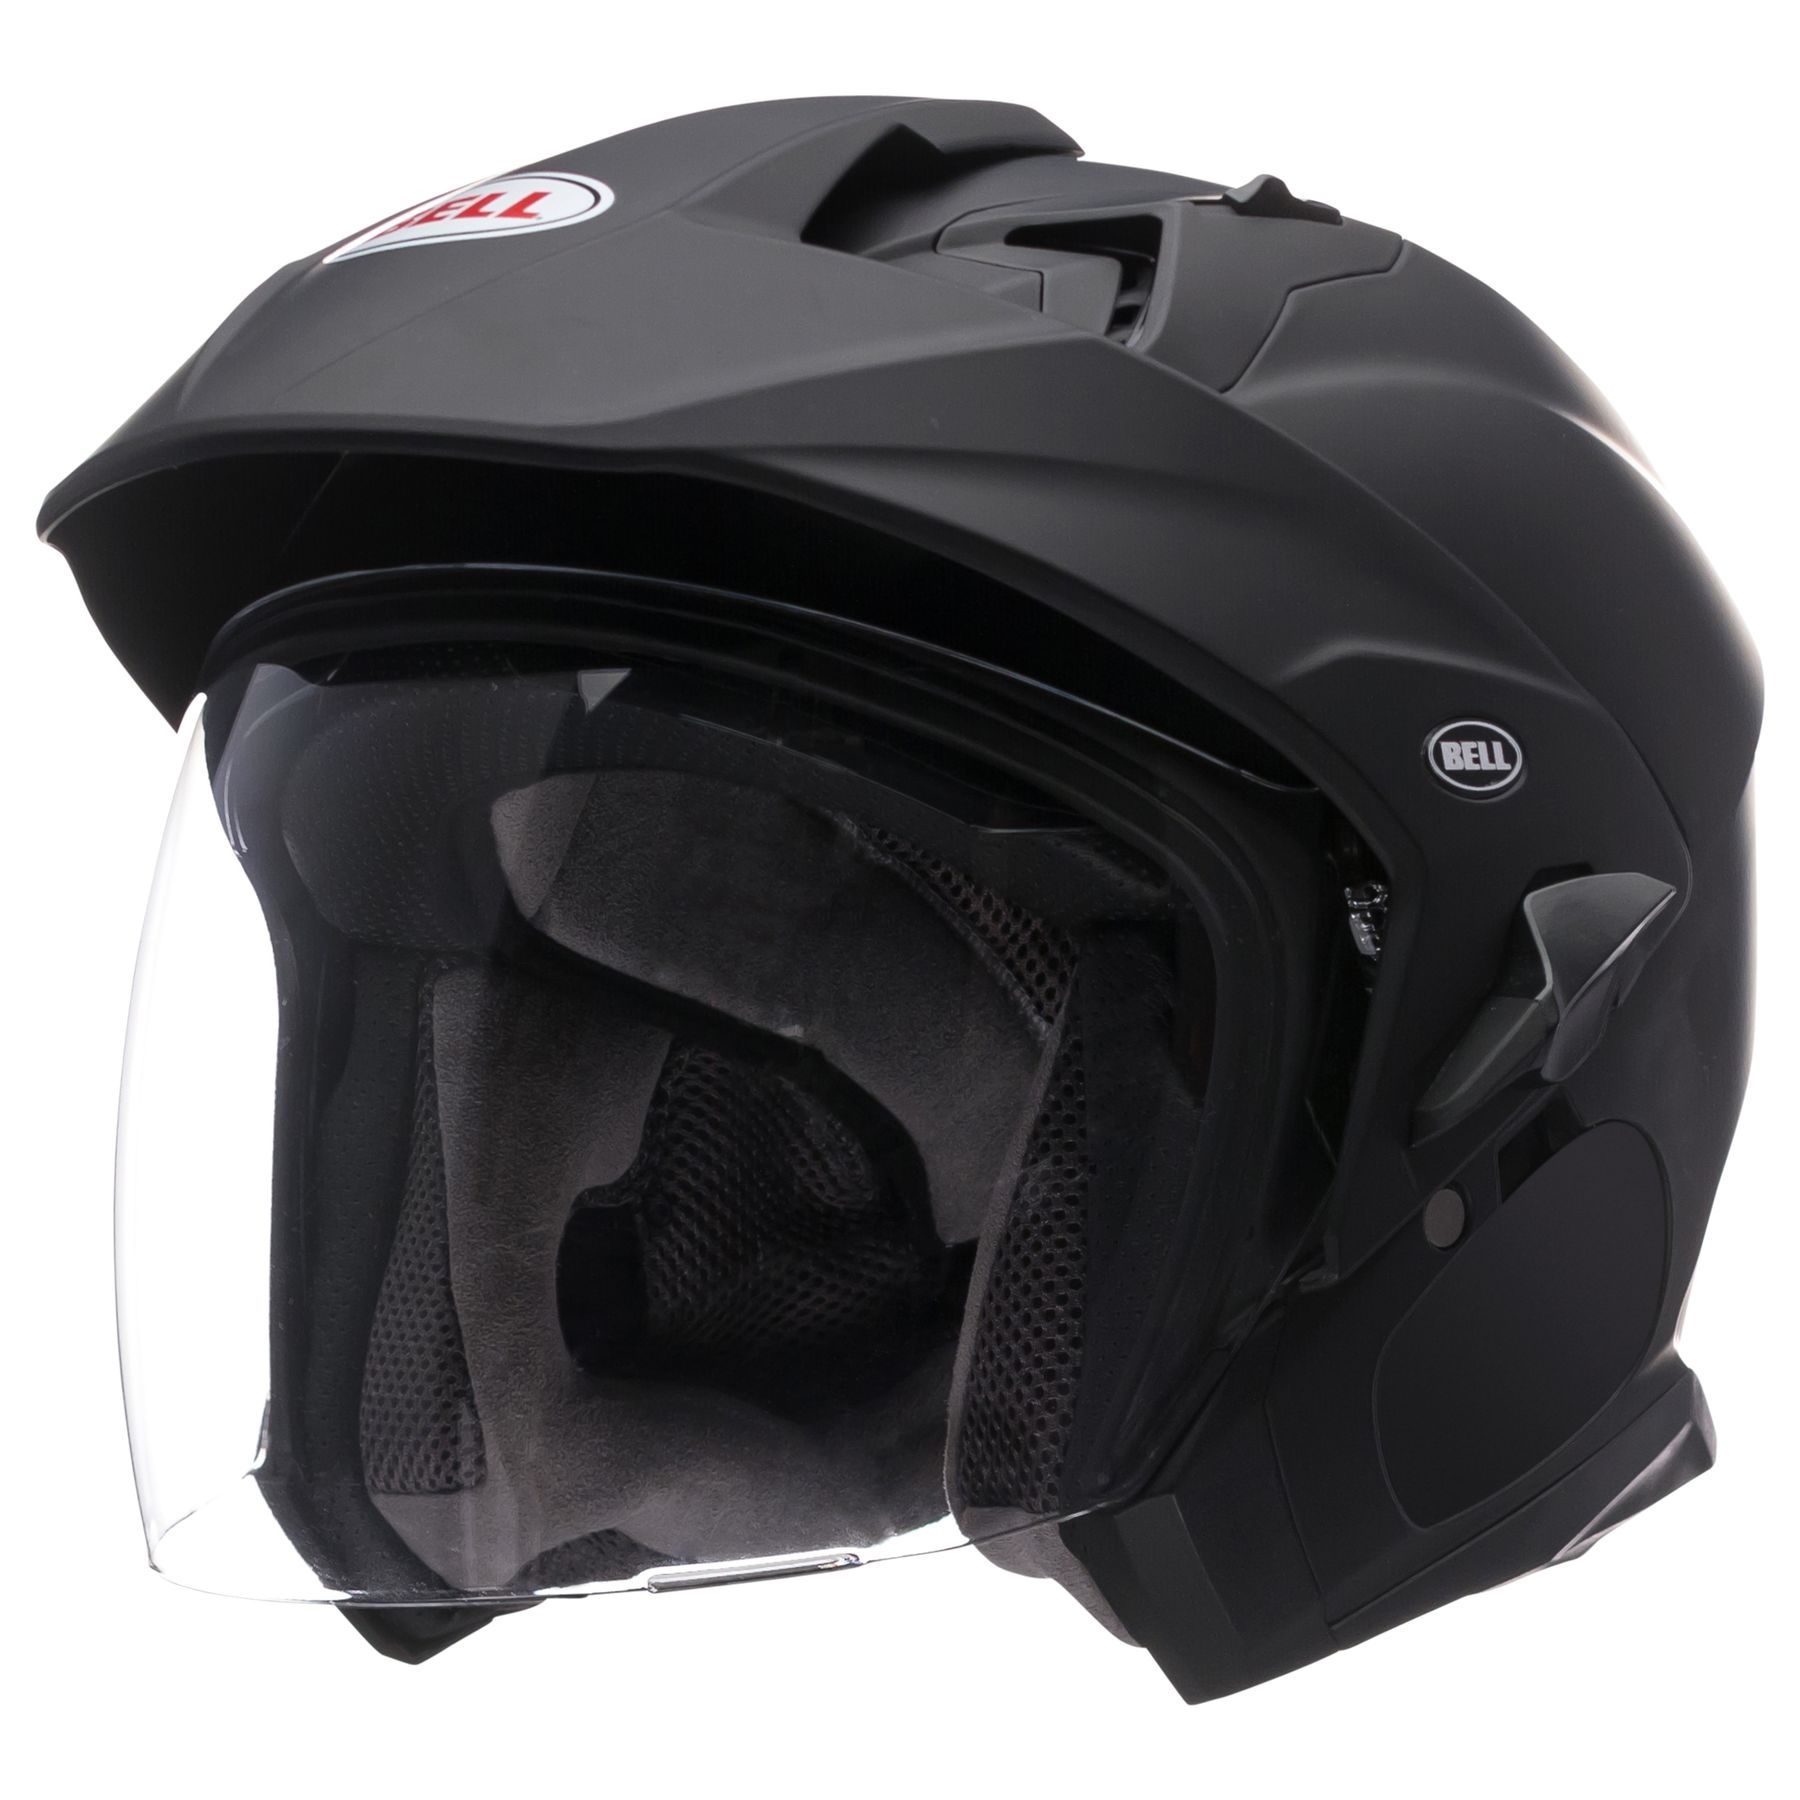 Bell Mag 9 Sena Helmet Side View